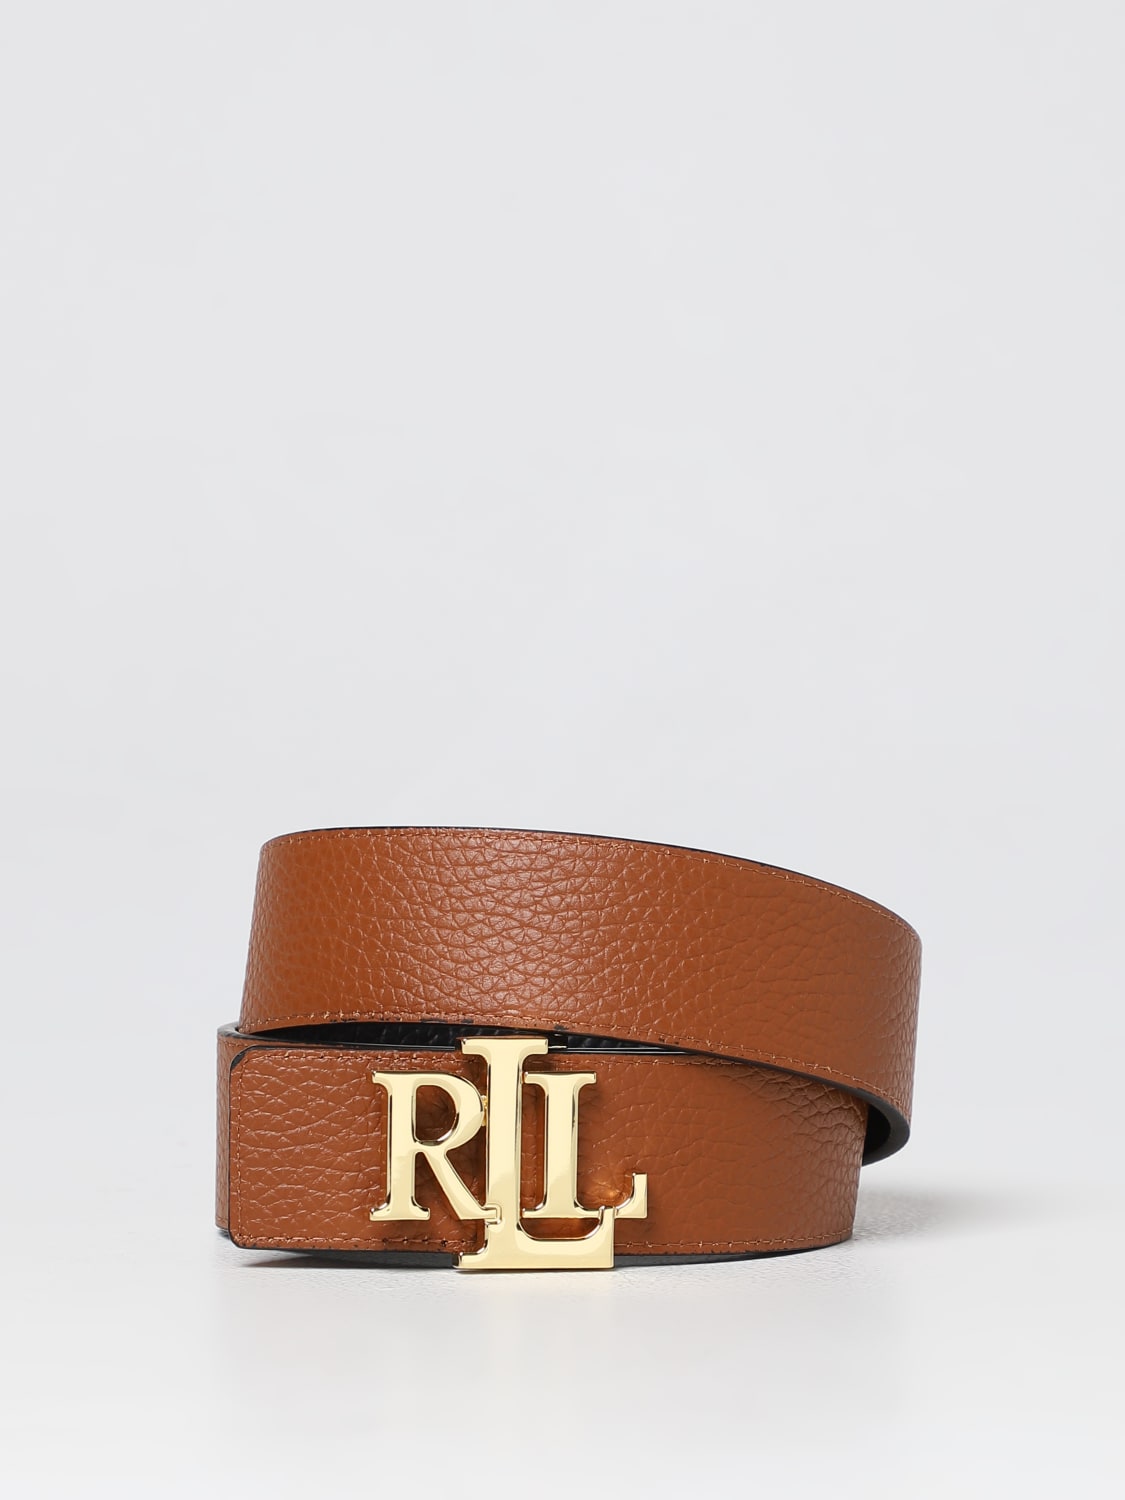 Lauren Ralph Lauren Women's Rev Lrl 40 Belt